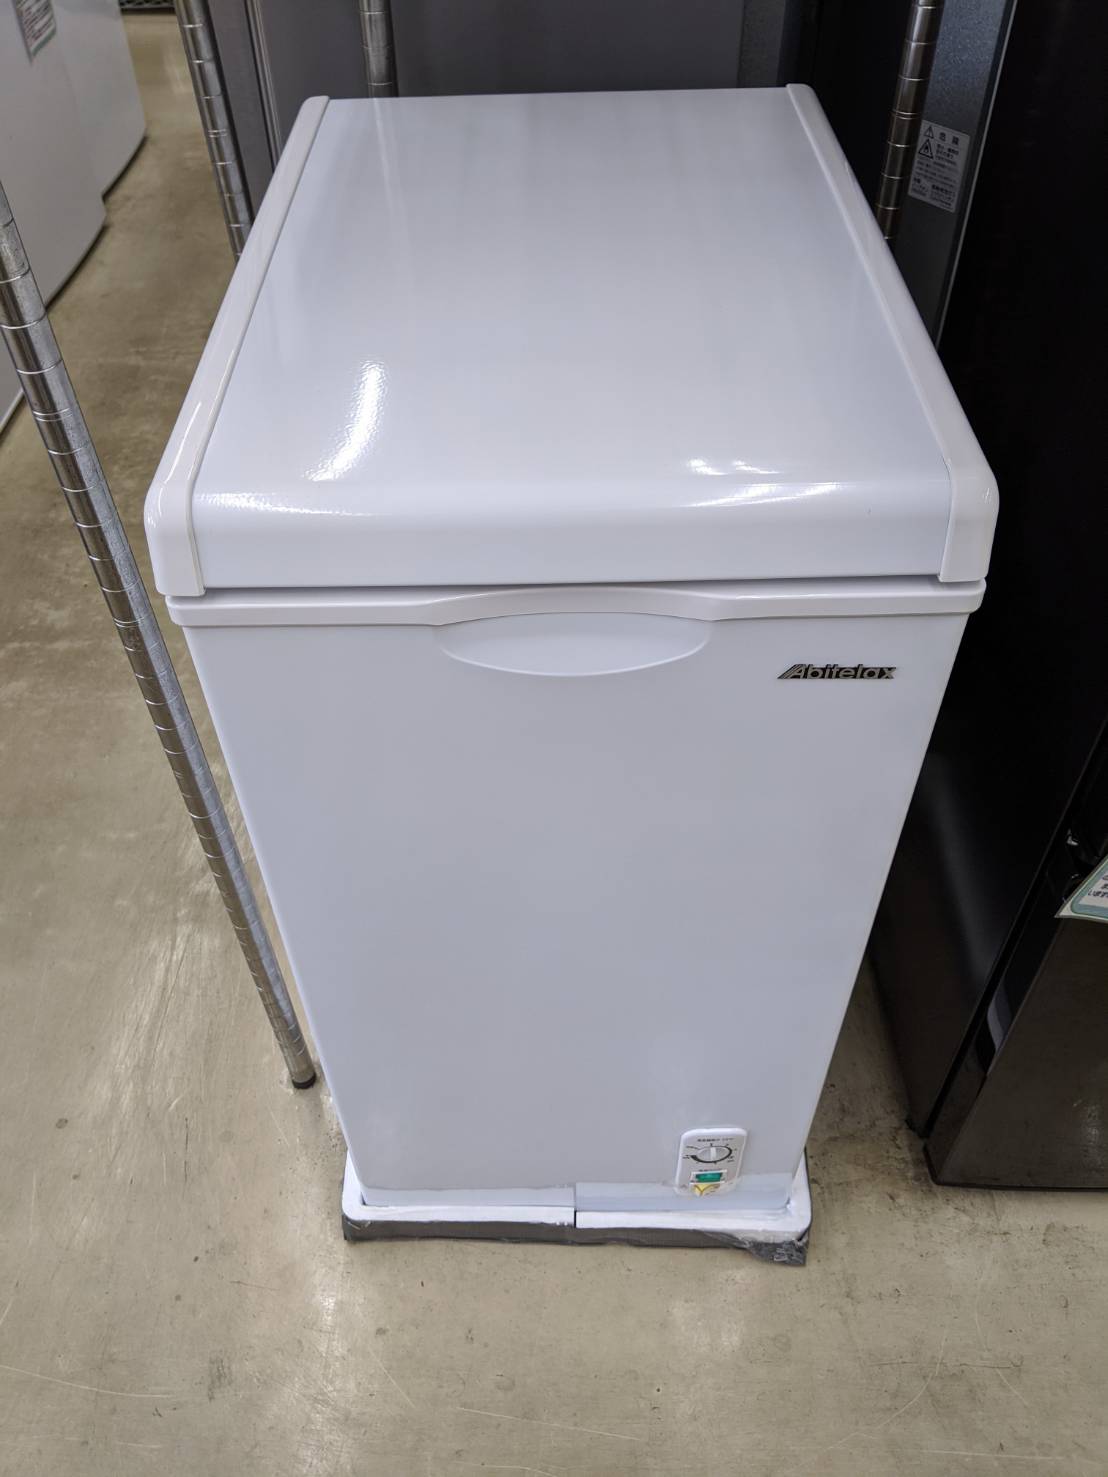 【Abitelax/アビテラックス 60L冷凍庫 2018年製 ACF-603C】を買取致しました。 - リサイクルマートは現在冷蔵庫の買取、家具の買取強化中です！お気軽にお問い合わせください。